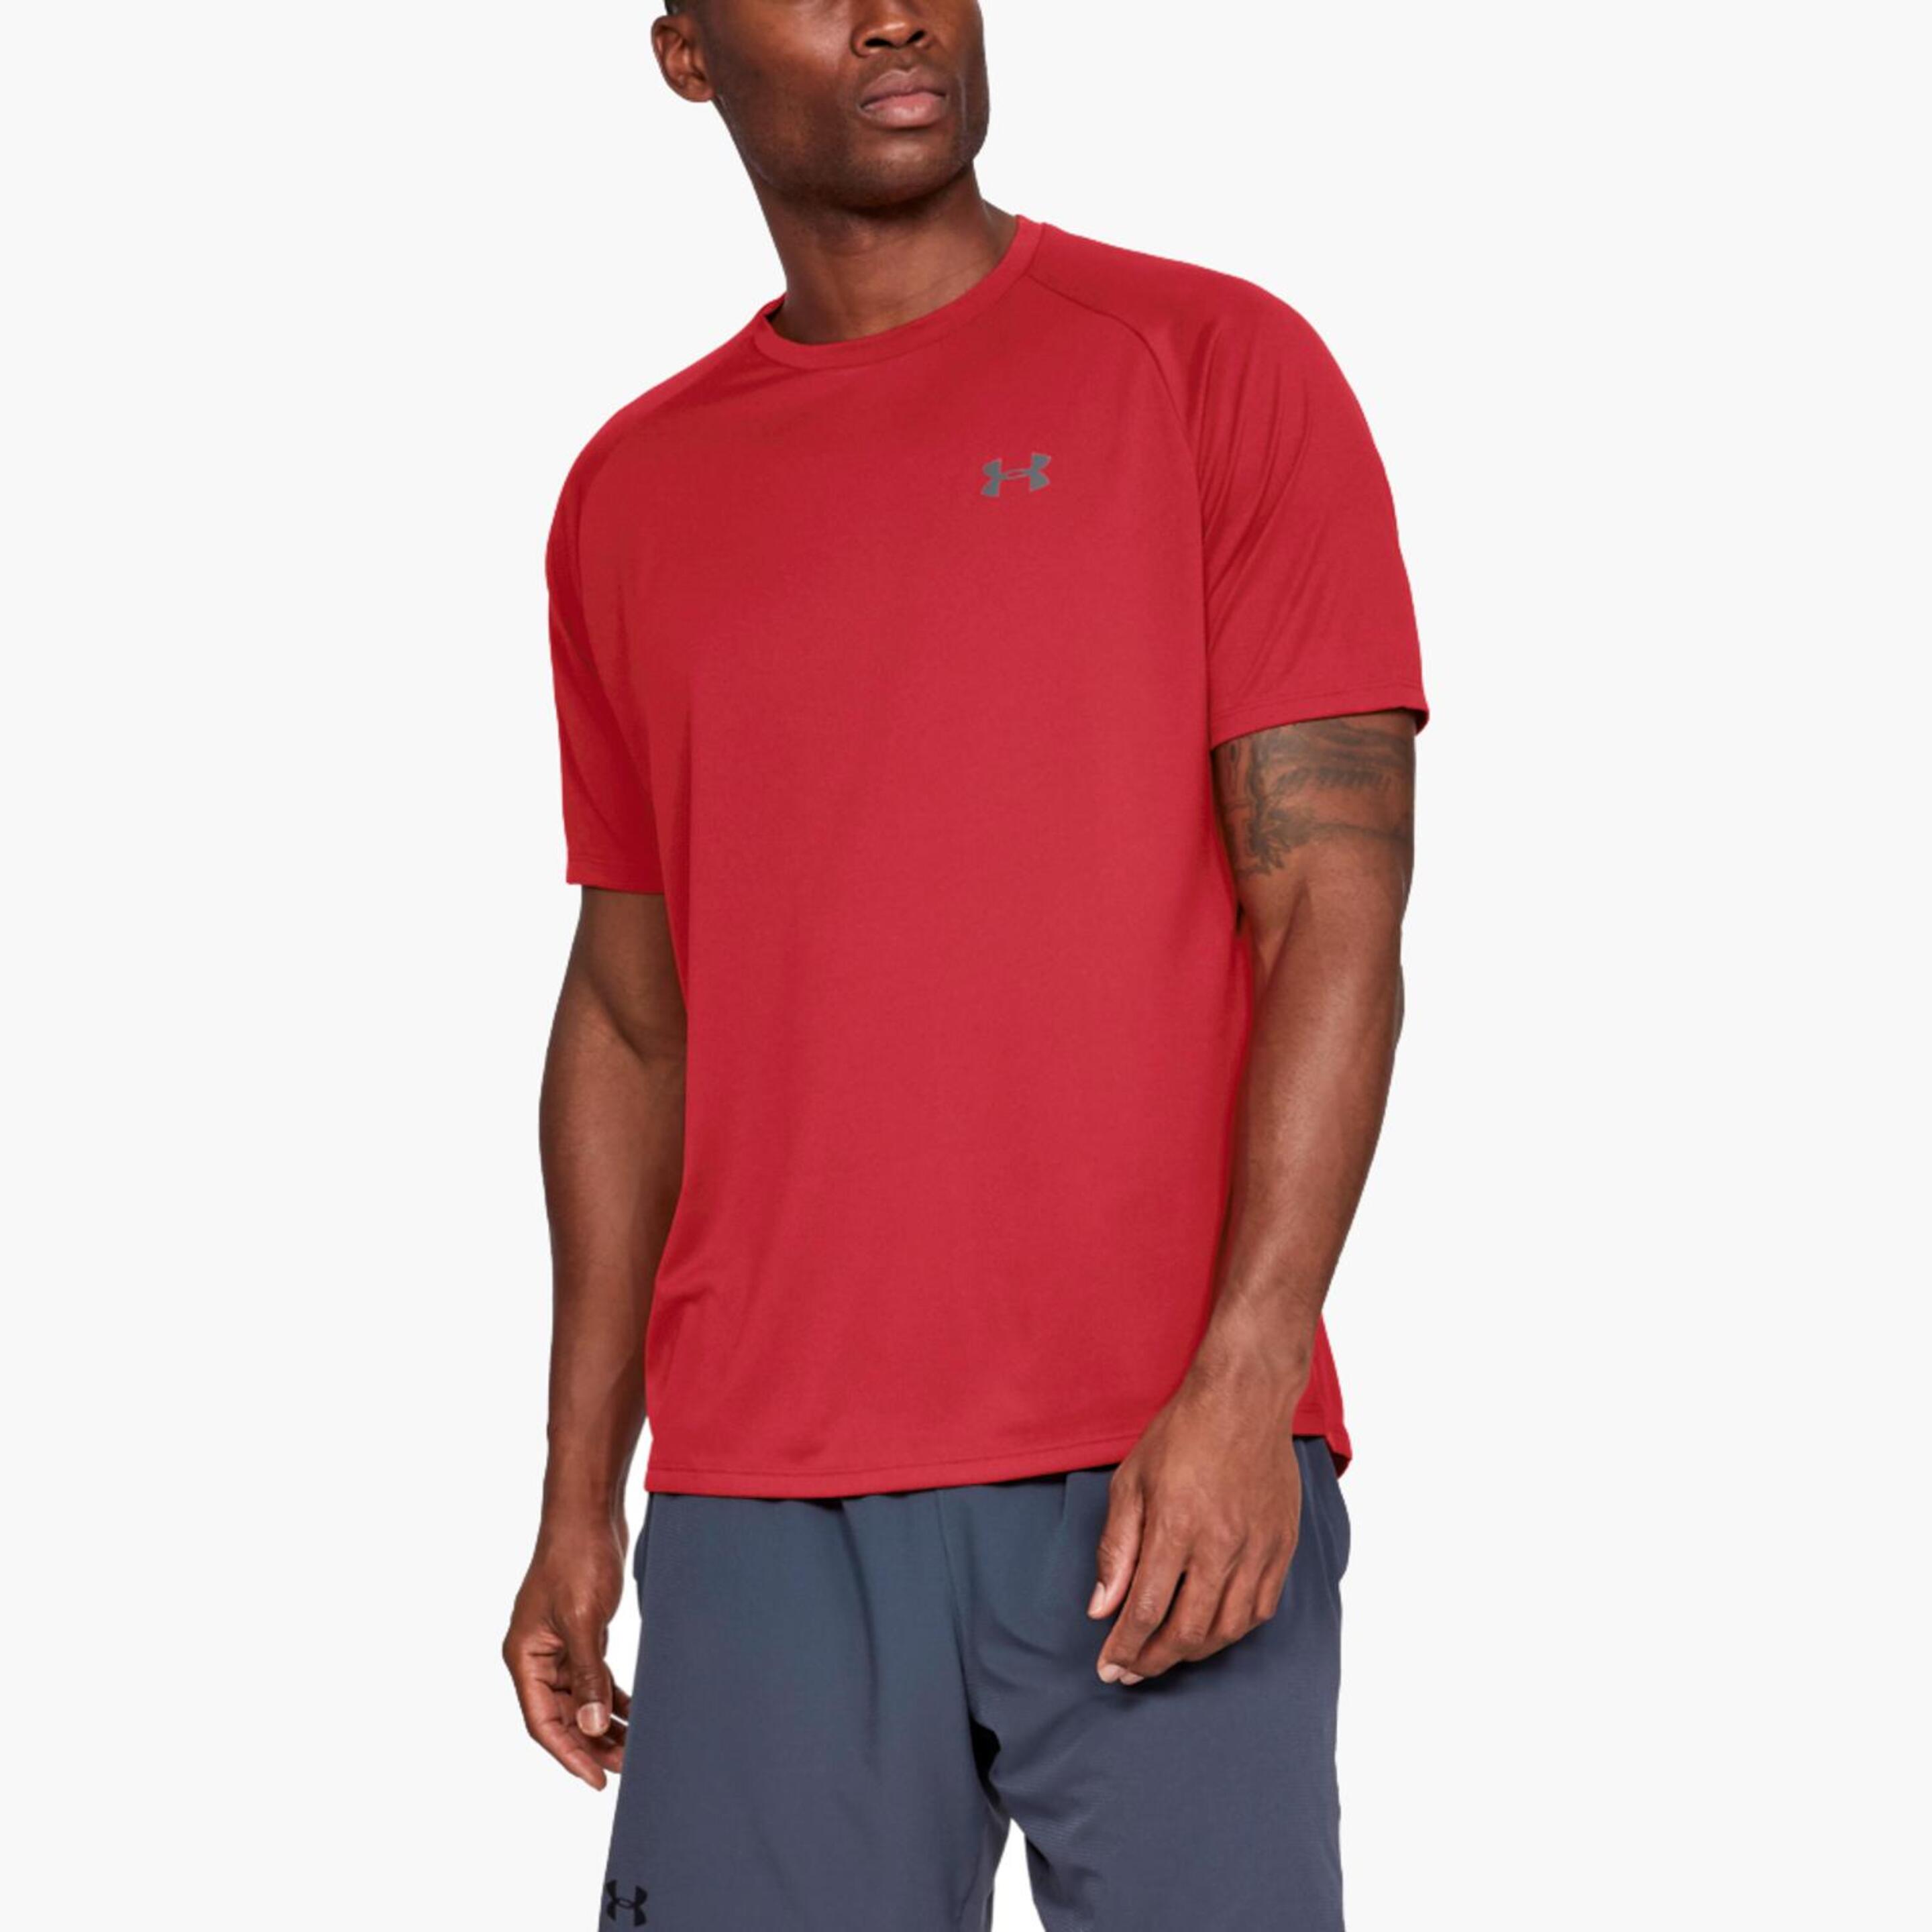 Under Armour Tech - Rojo - Camiseta Running Hombre  MKP